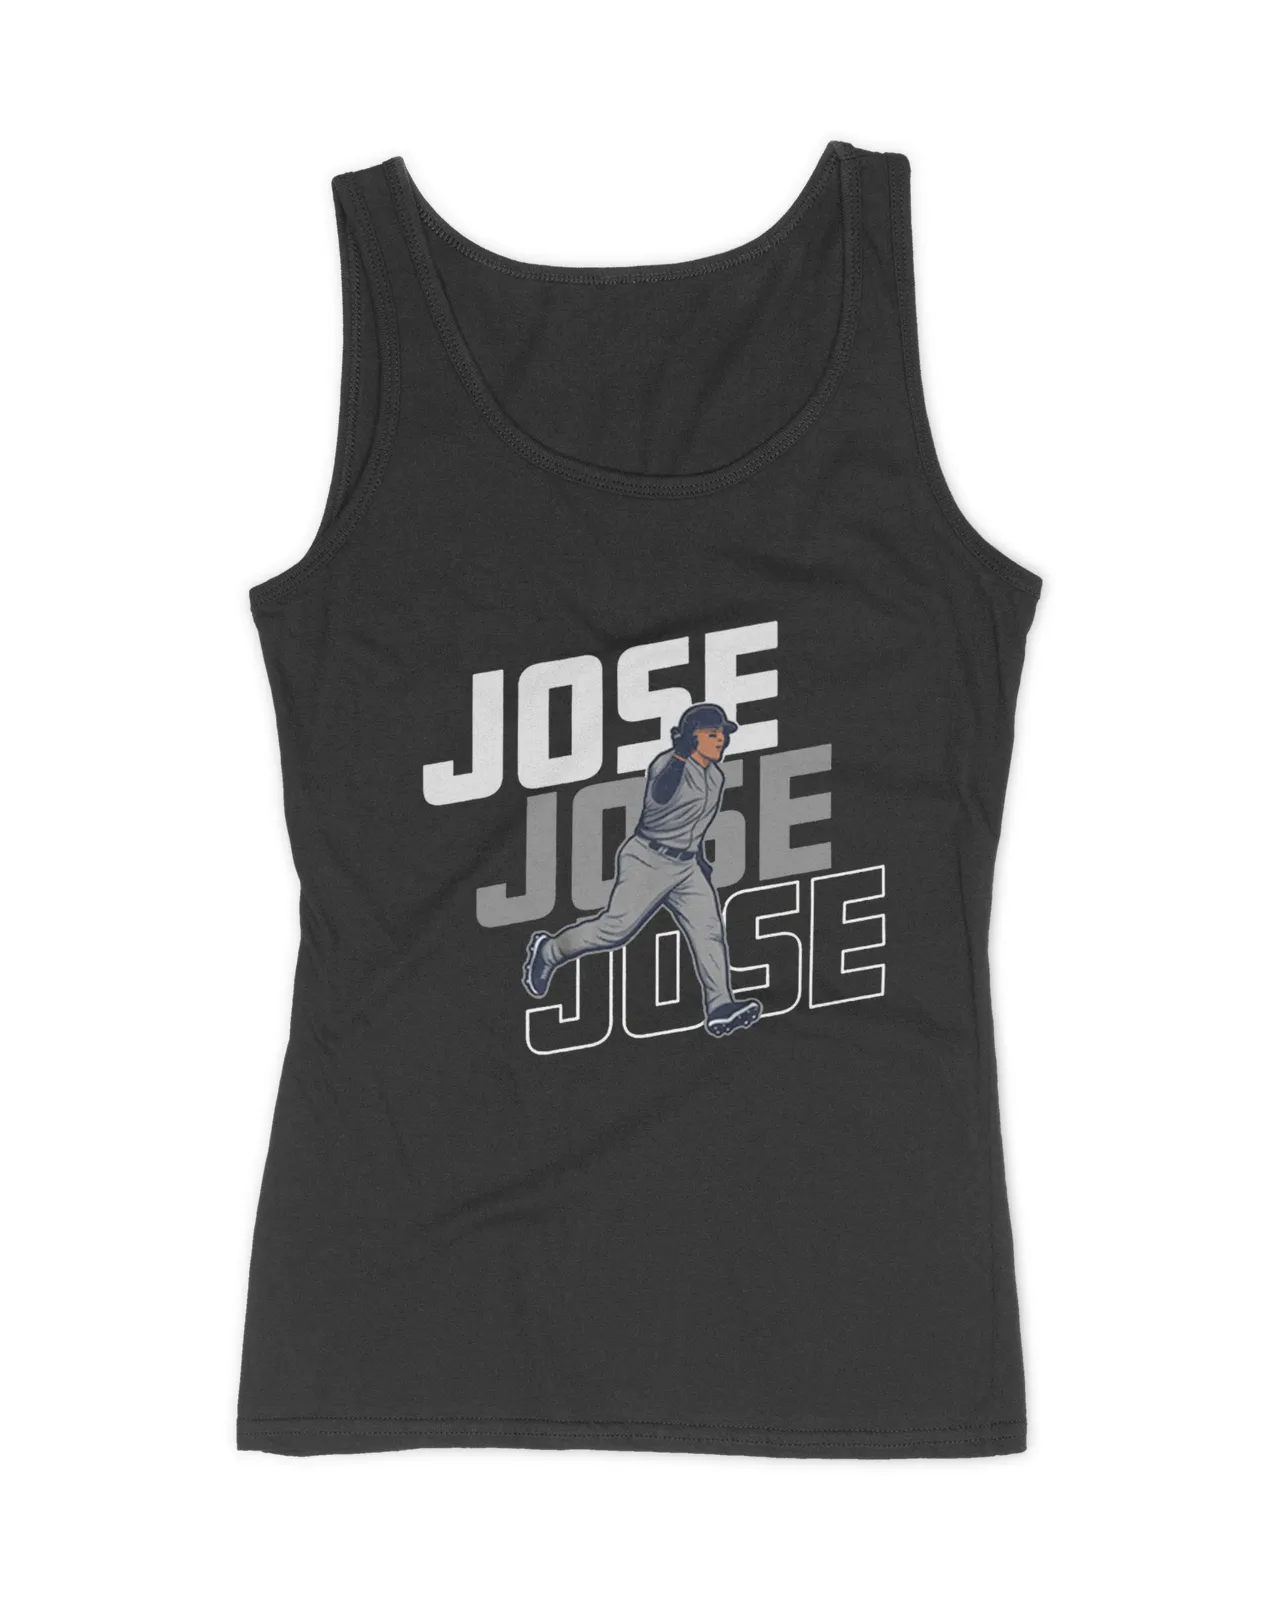 Jose Trevino Jose Jose Jose shirt